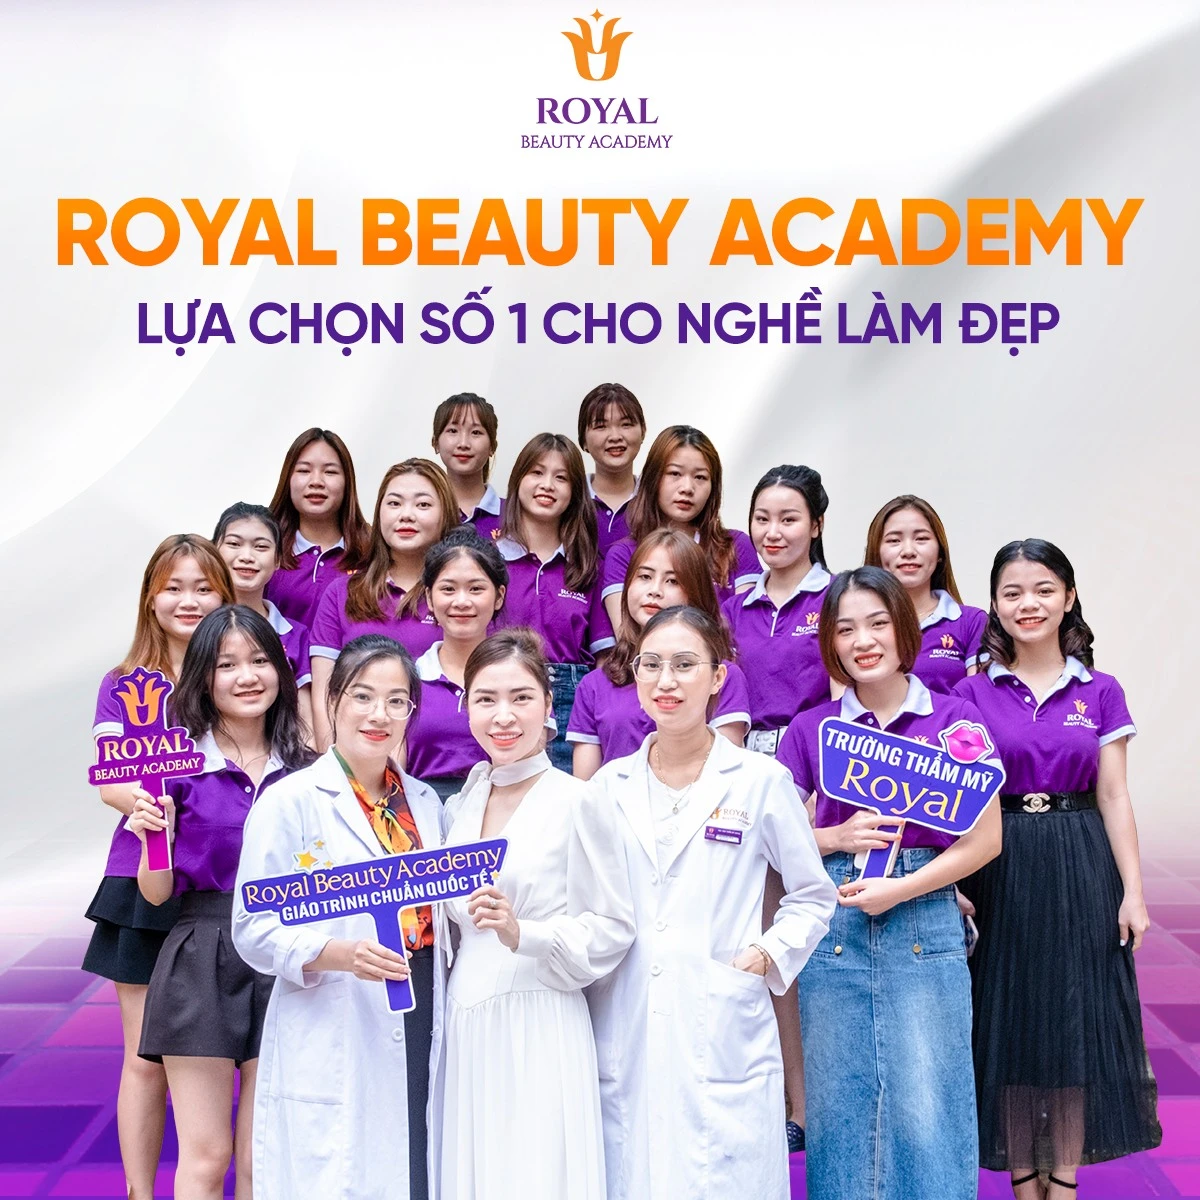 Royal Beauty Academy sự lựa chọn hoàn hảo đào tạo nganh chăm sóc sắc đẹp